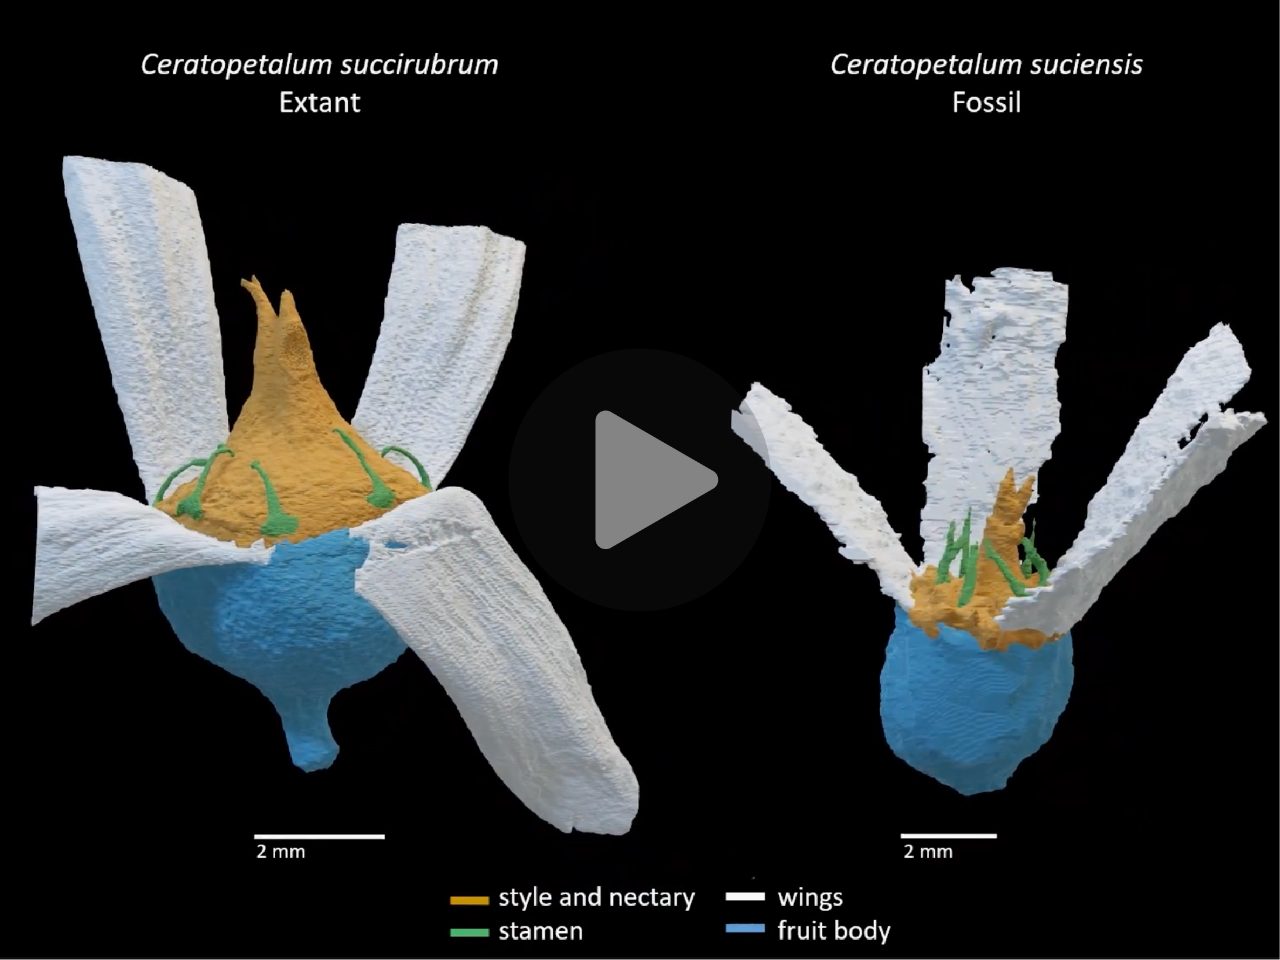 3D reconstruction of Ceratopetalum sucuensis and Ceratopetalum succirubrum